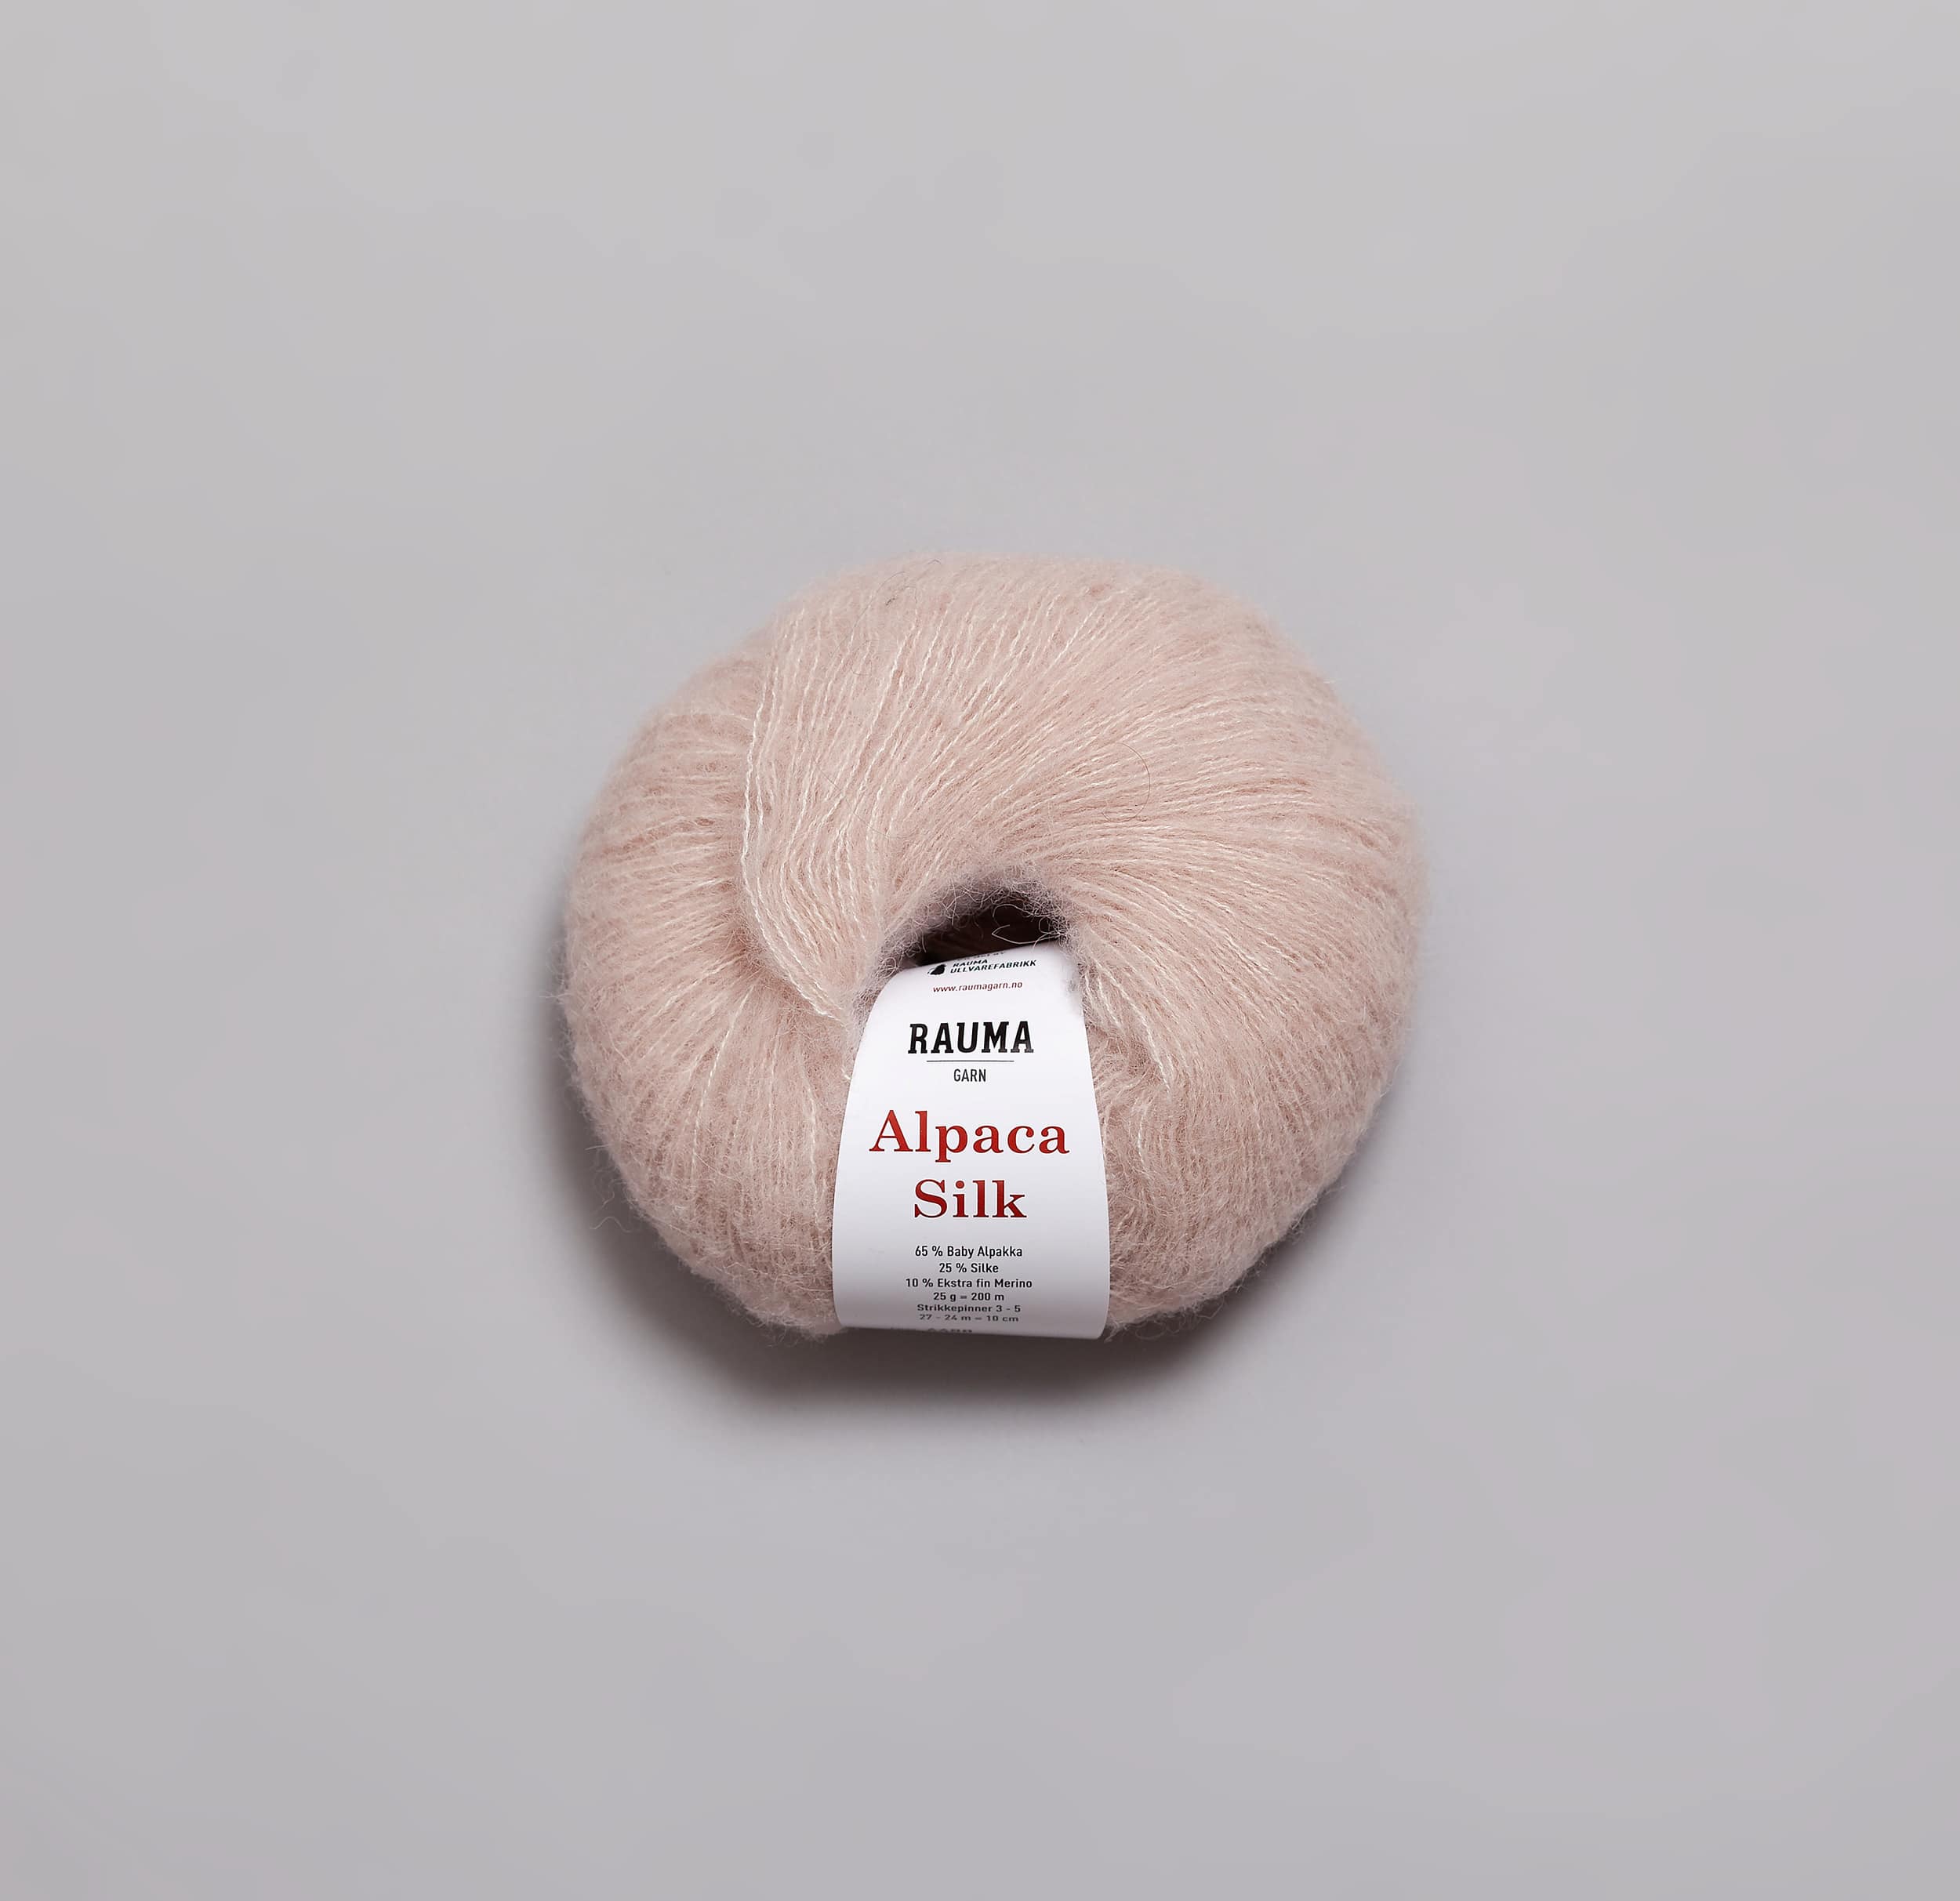 Billede af Alpaca silk - 6488 dus rosa 6488 dus rosa - variation - - Nordisk Garn